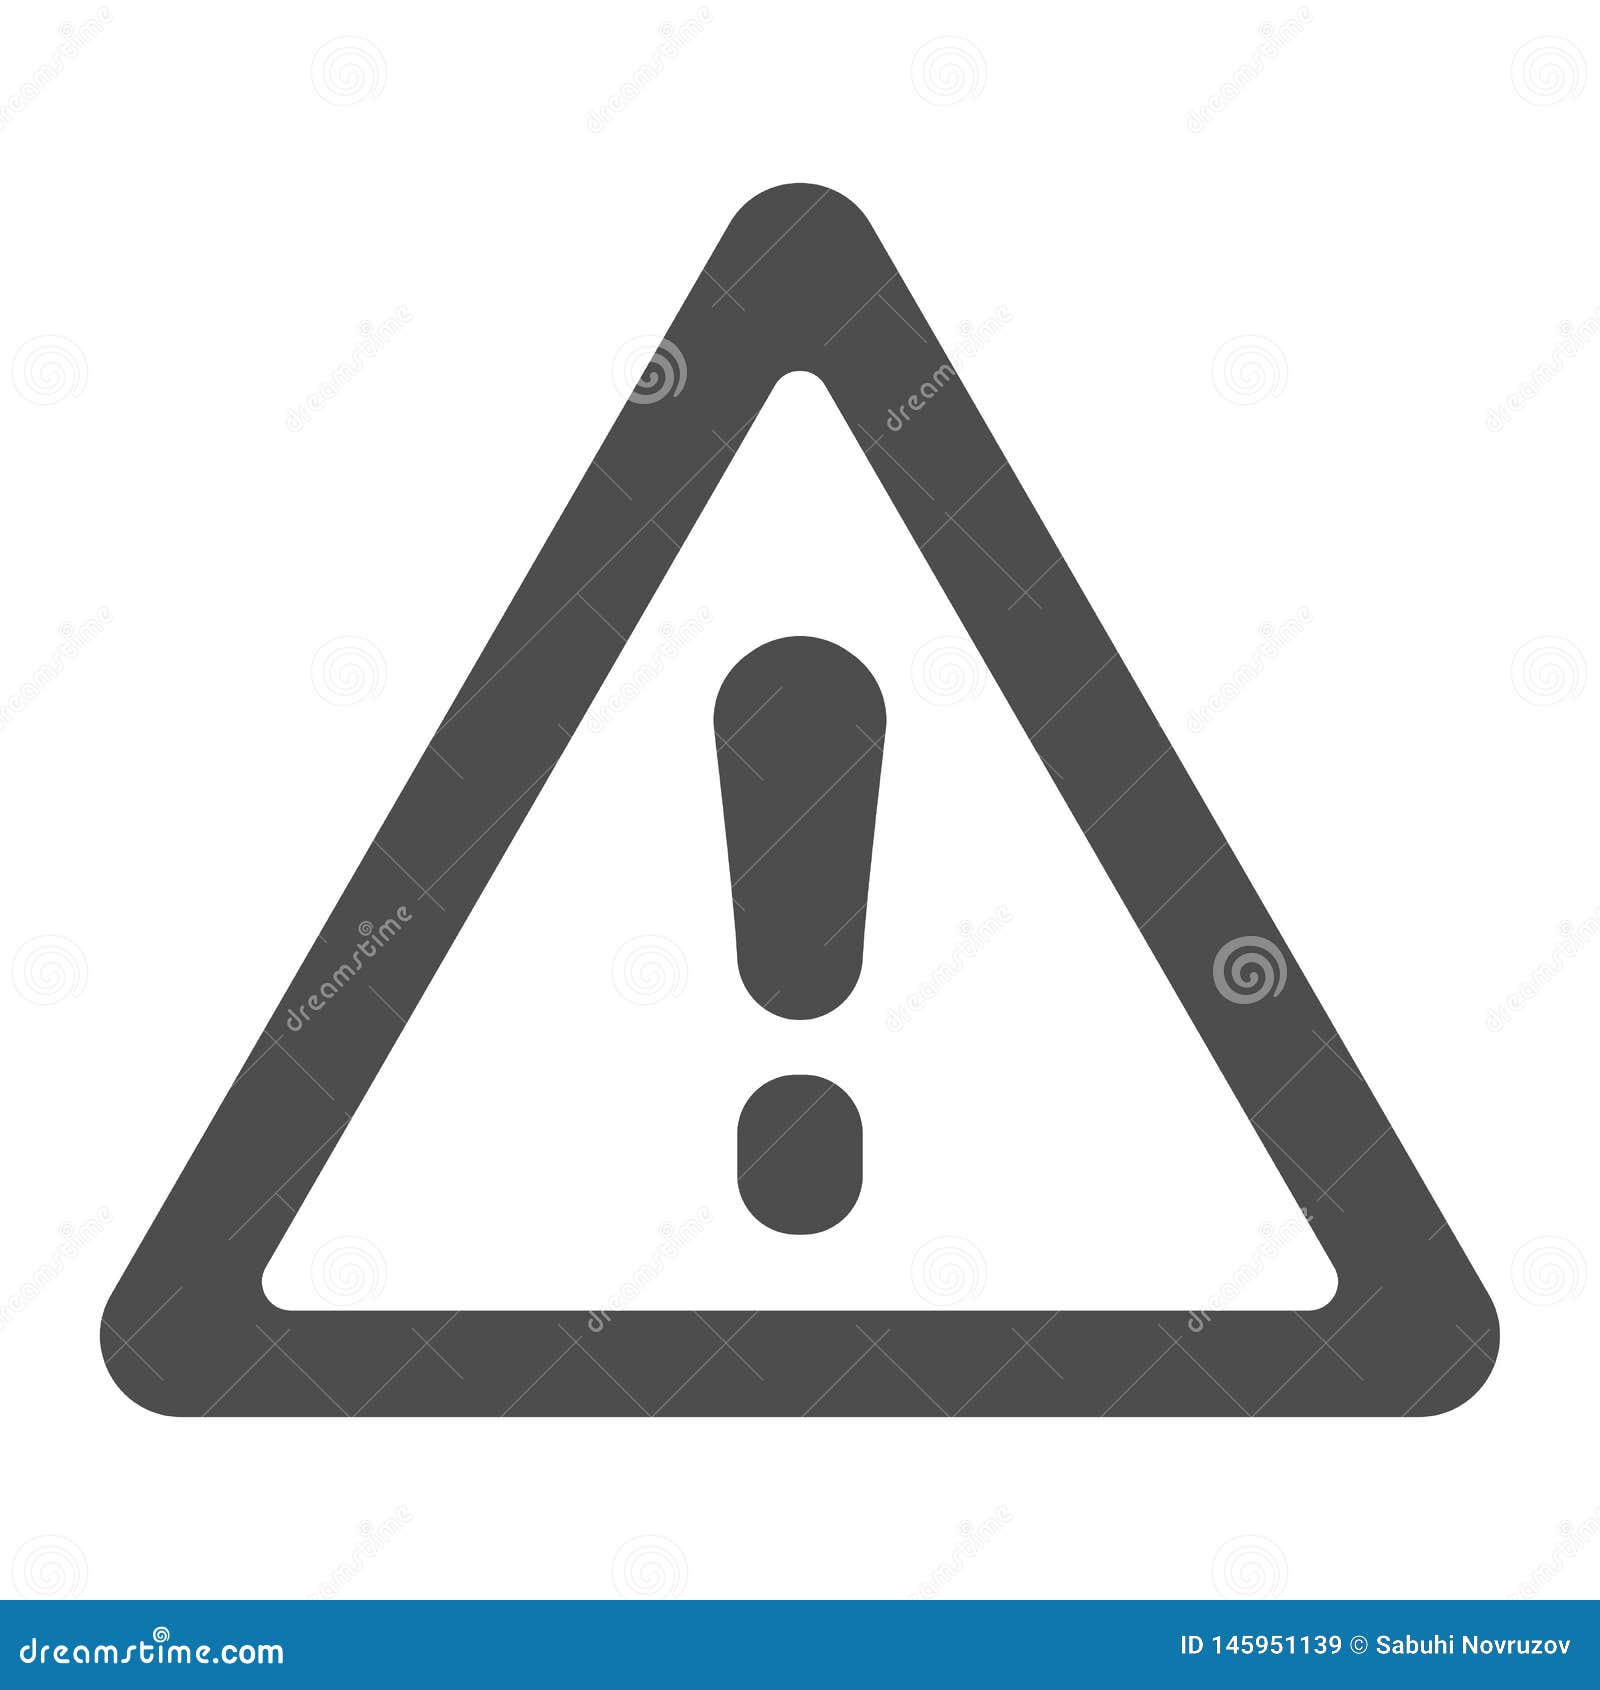 Изолированные знаки. Внимательность символ. Предупреждающие знаки. Warning icon. XP Warning icon.